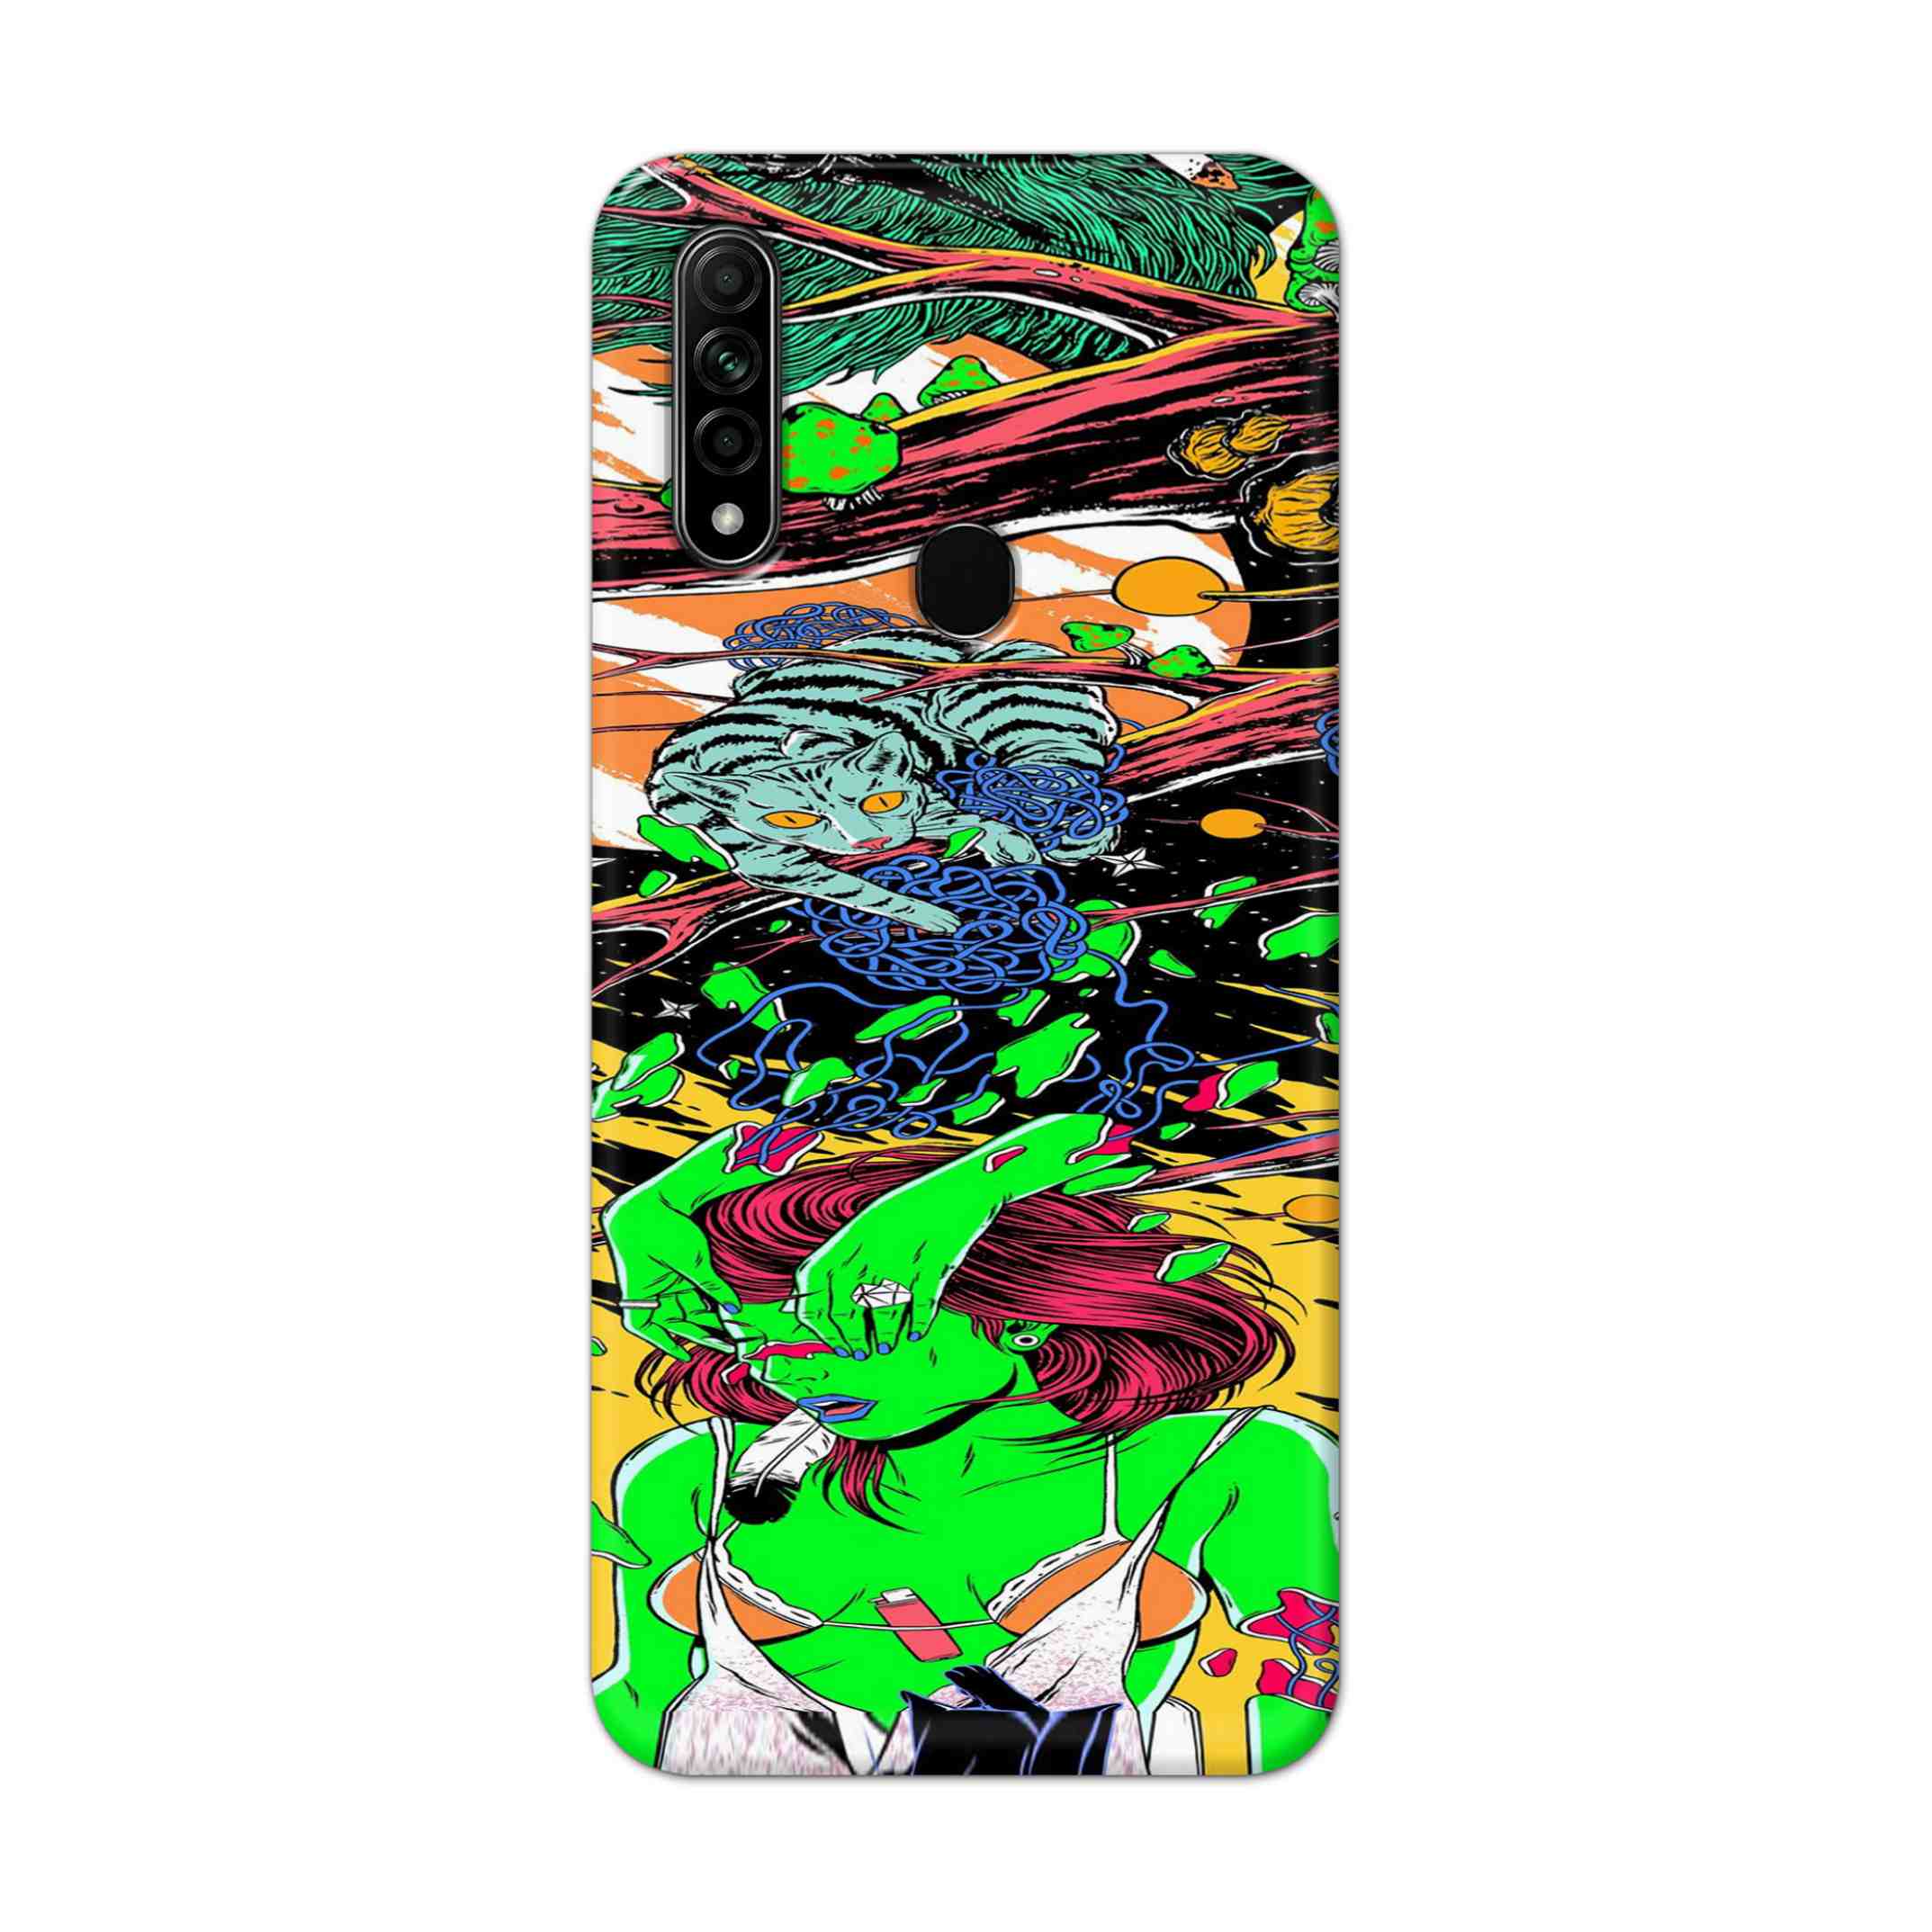 Buy Green Girl Art Hard Back Mobile Phone Case Cover For Oppo A31 (2020) Online